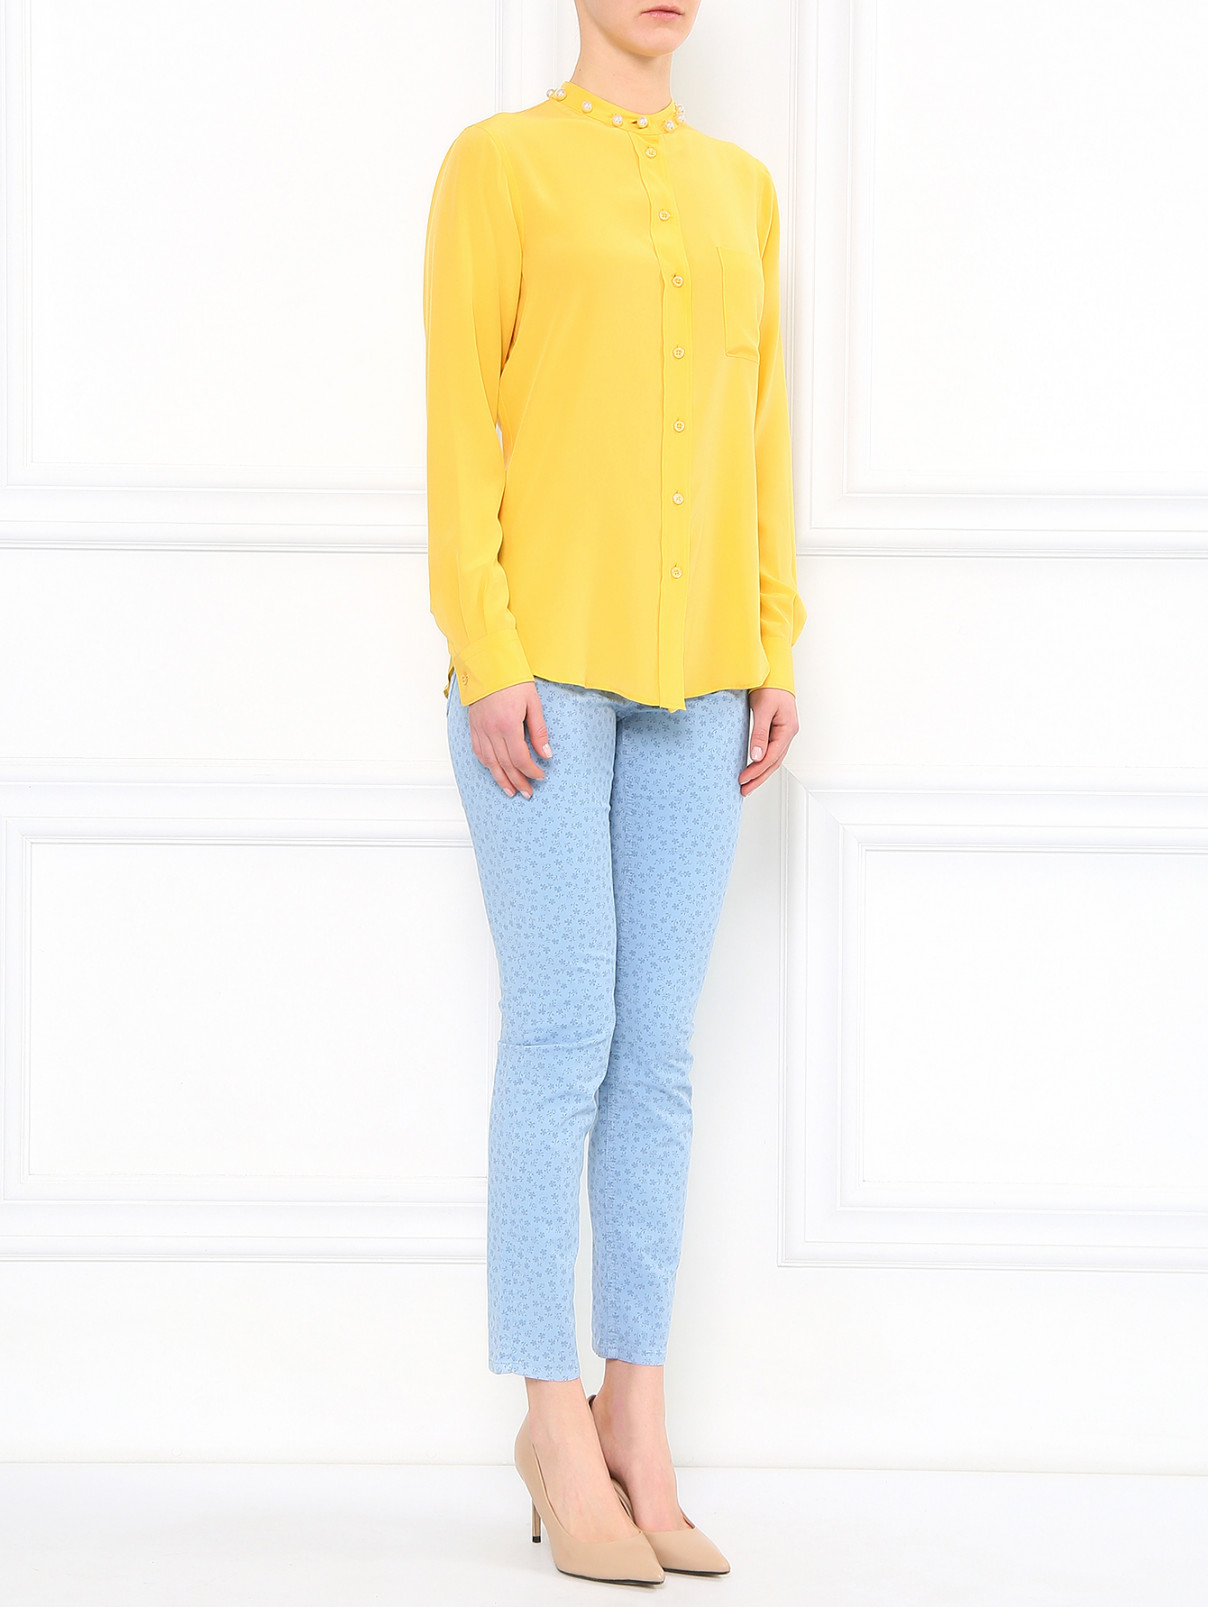 Блуза из шелка декорированная жемчугом Moschino  –  Модель Общий вид  – Цвет:  Желтый